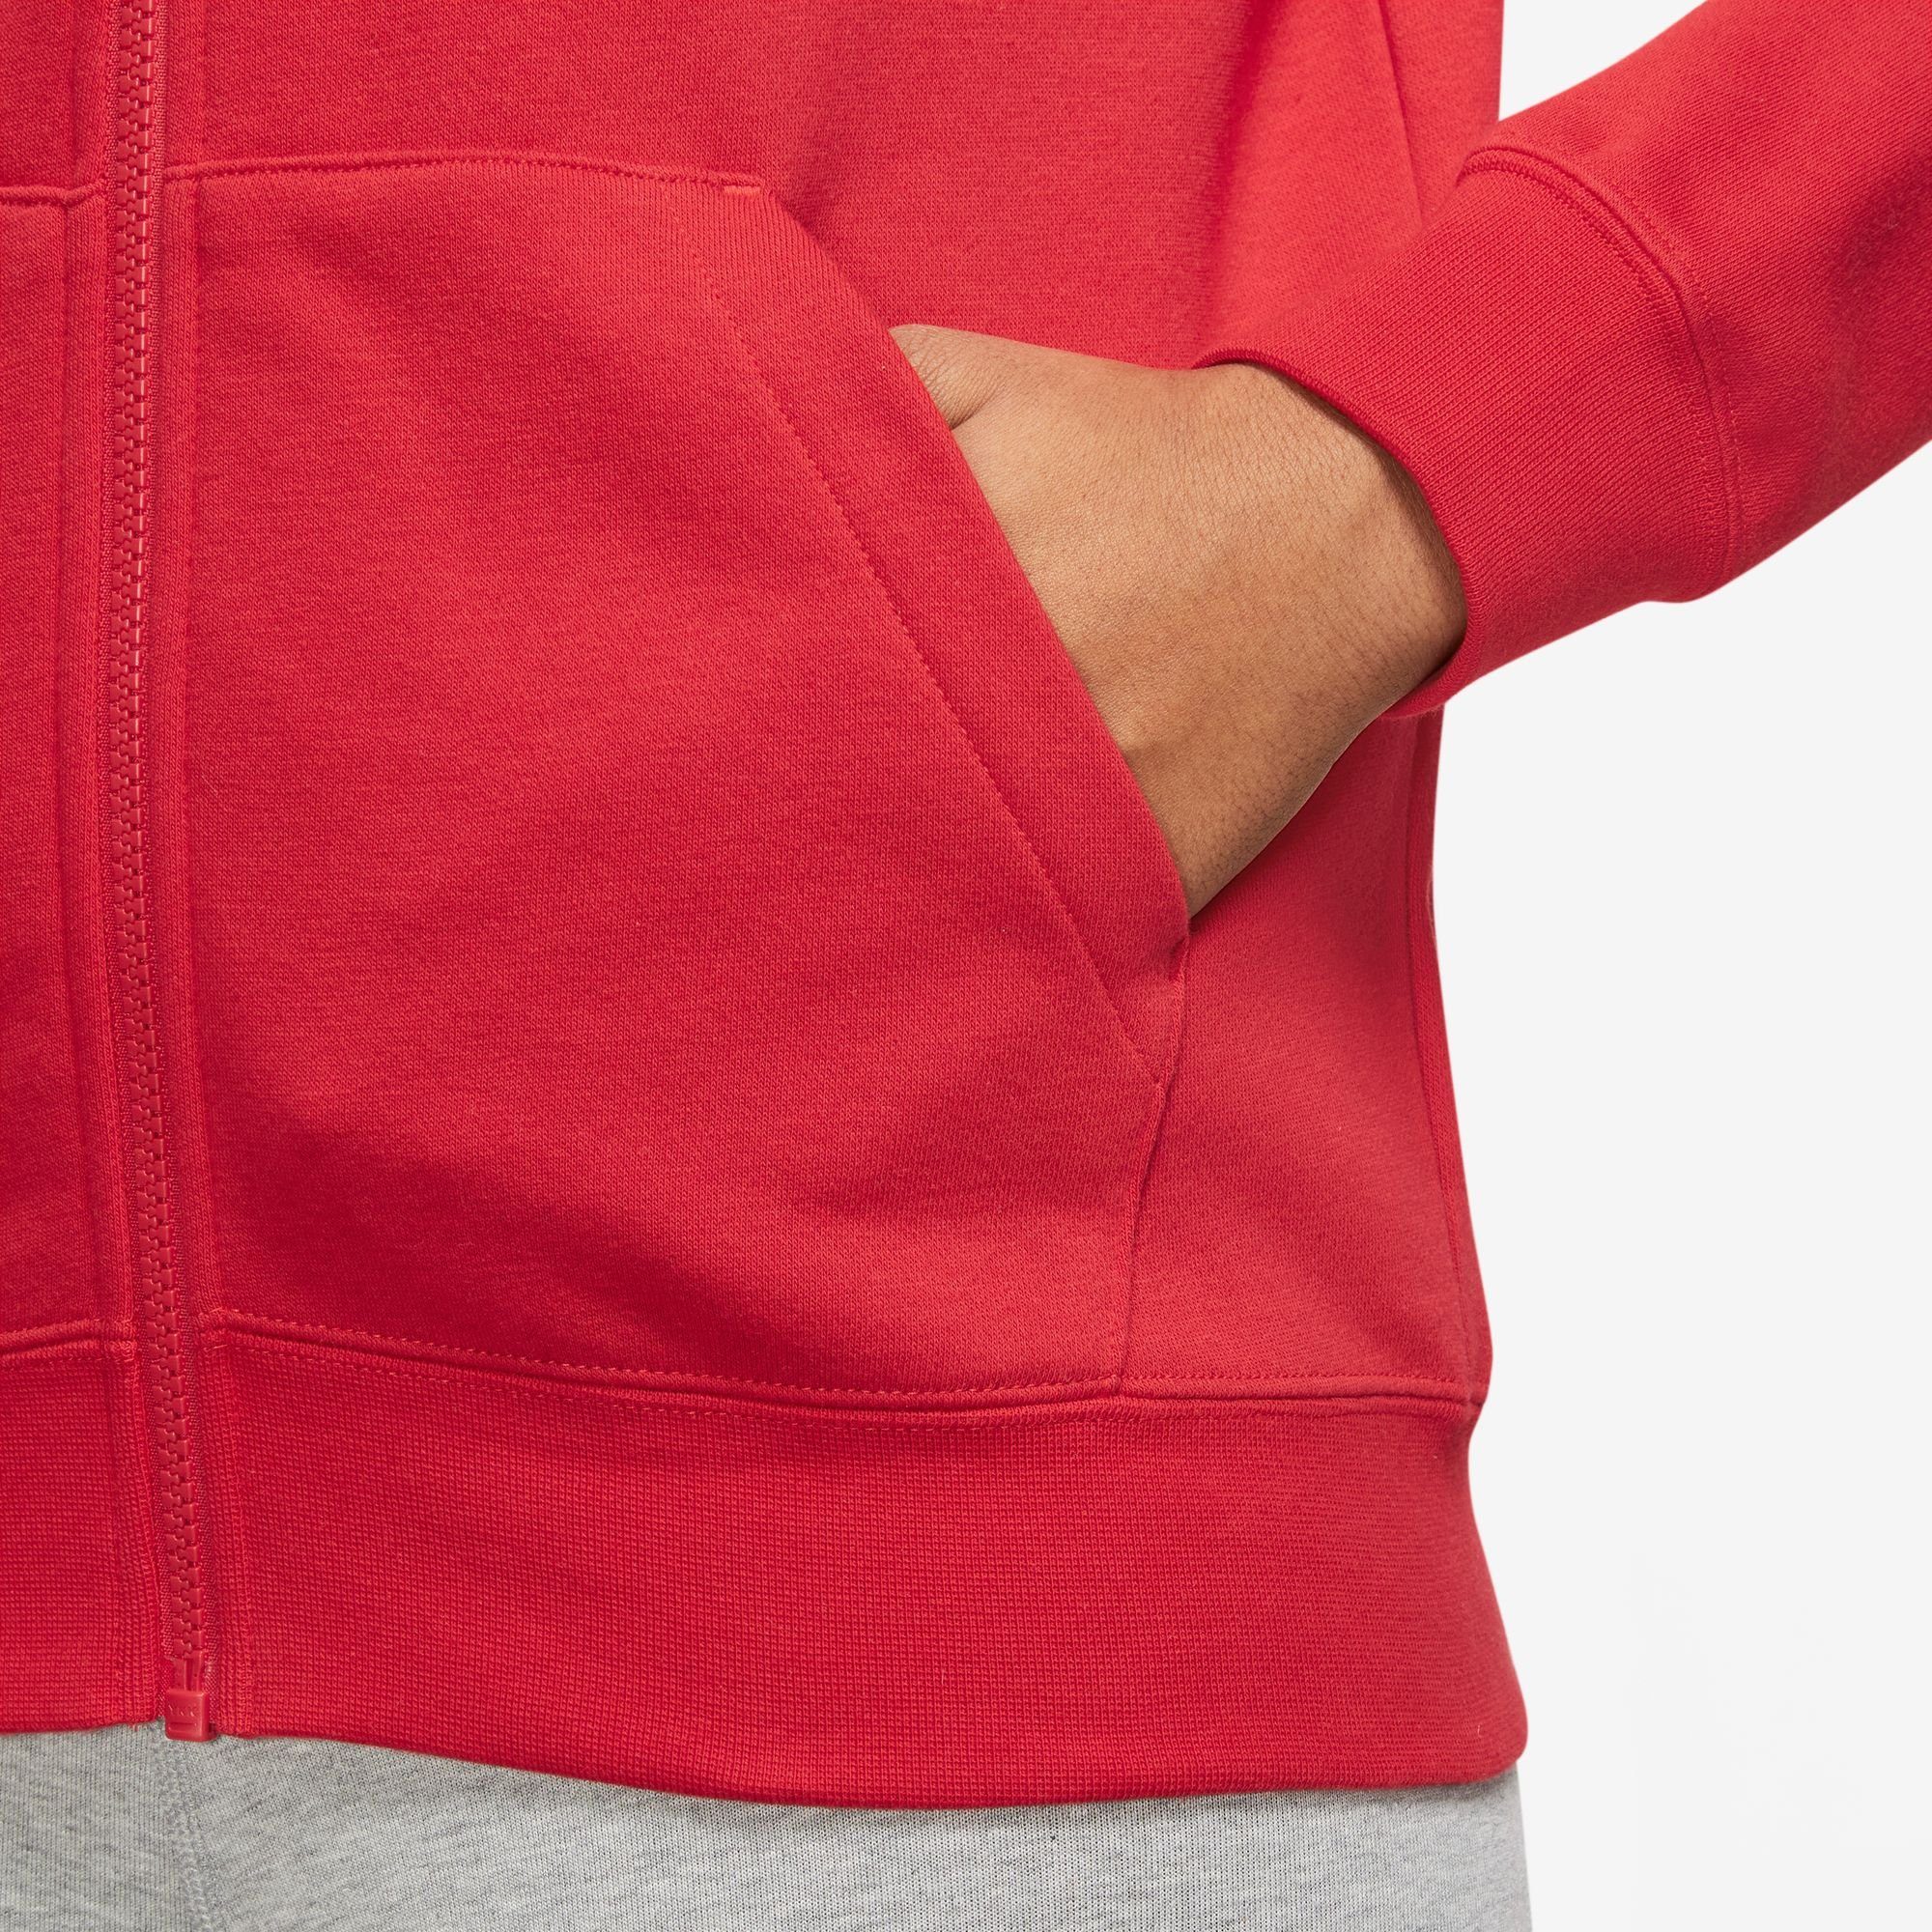 UNIVERSITY Women's Nike Fleece Hoodie Sportswear Full-Zip Kapuzensweatjacke RED/WHITE Club